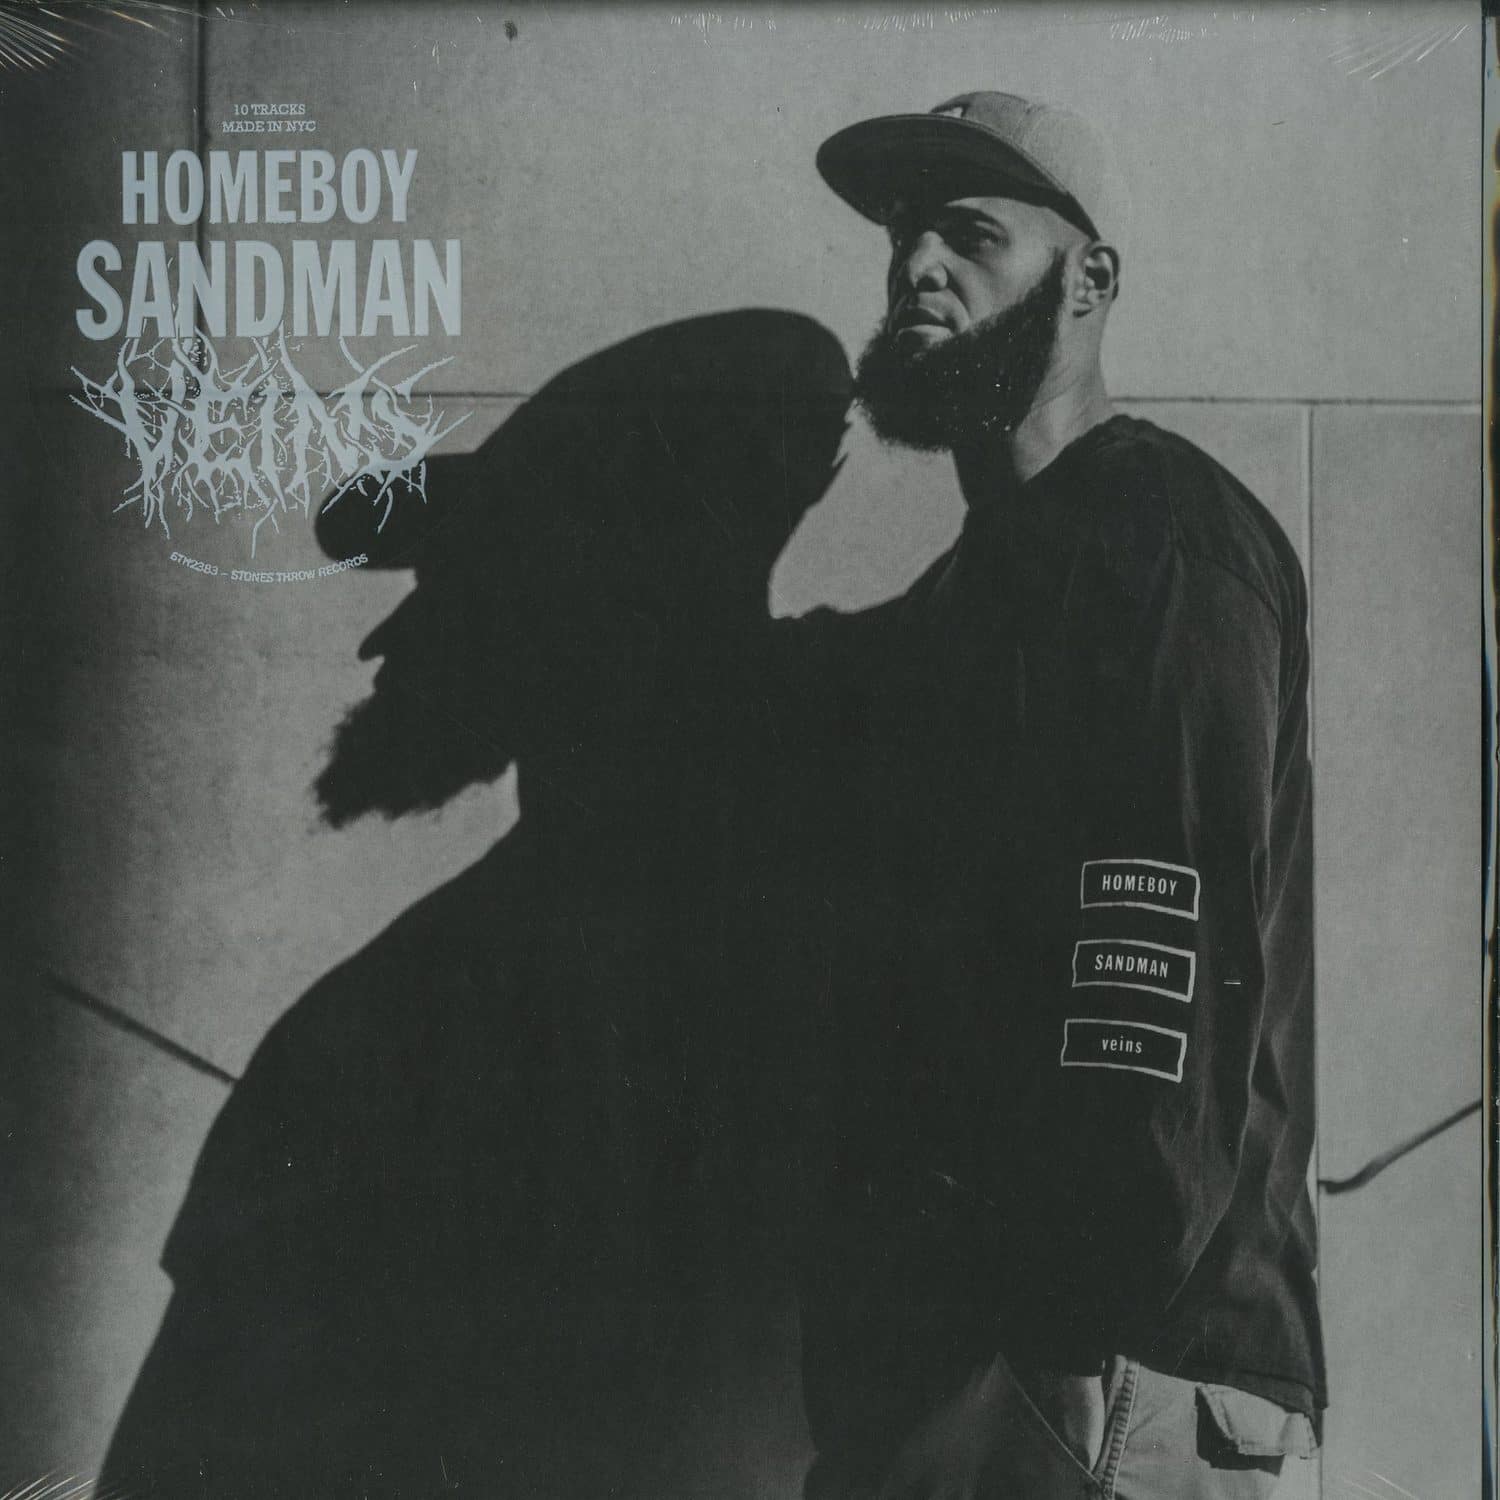 Homeboy Sandman - VEINS 